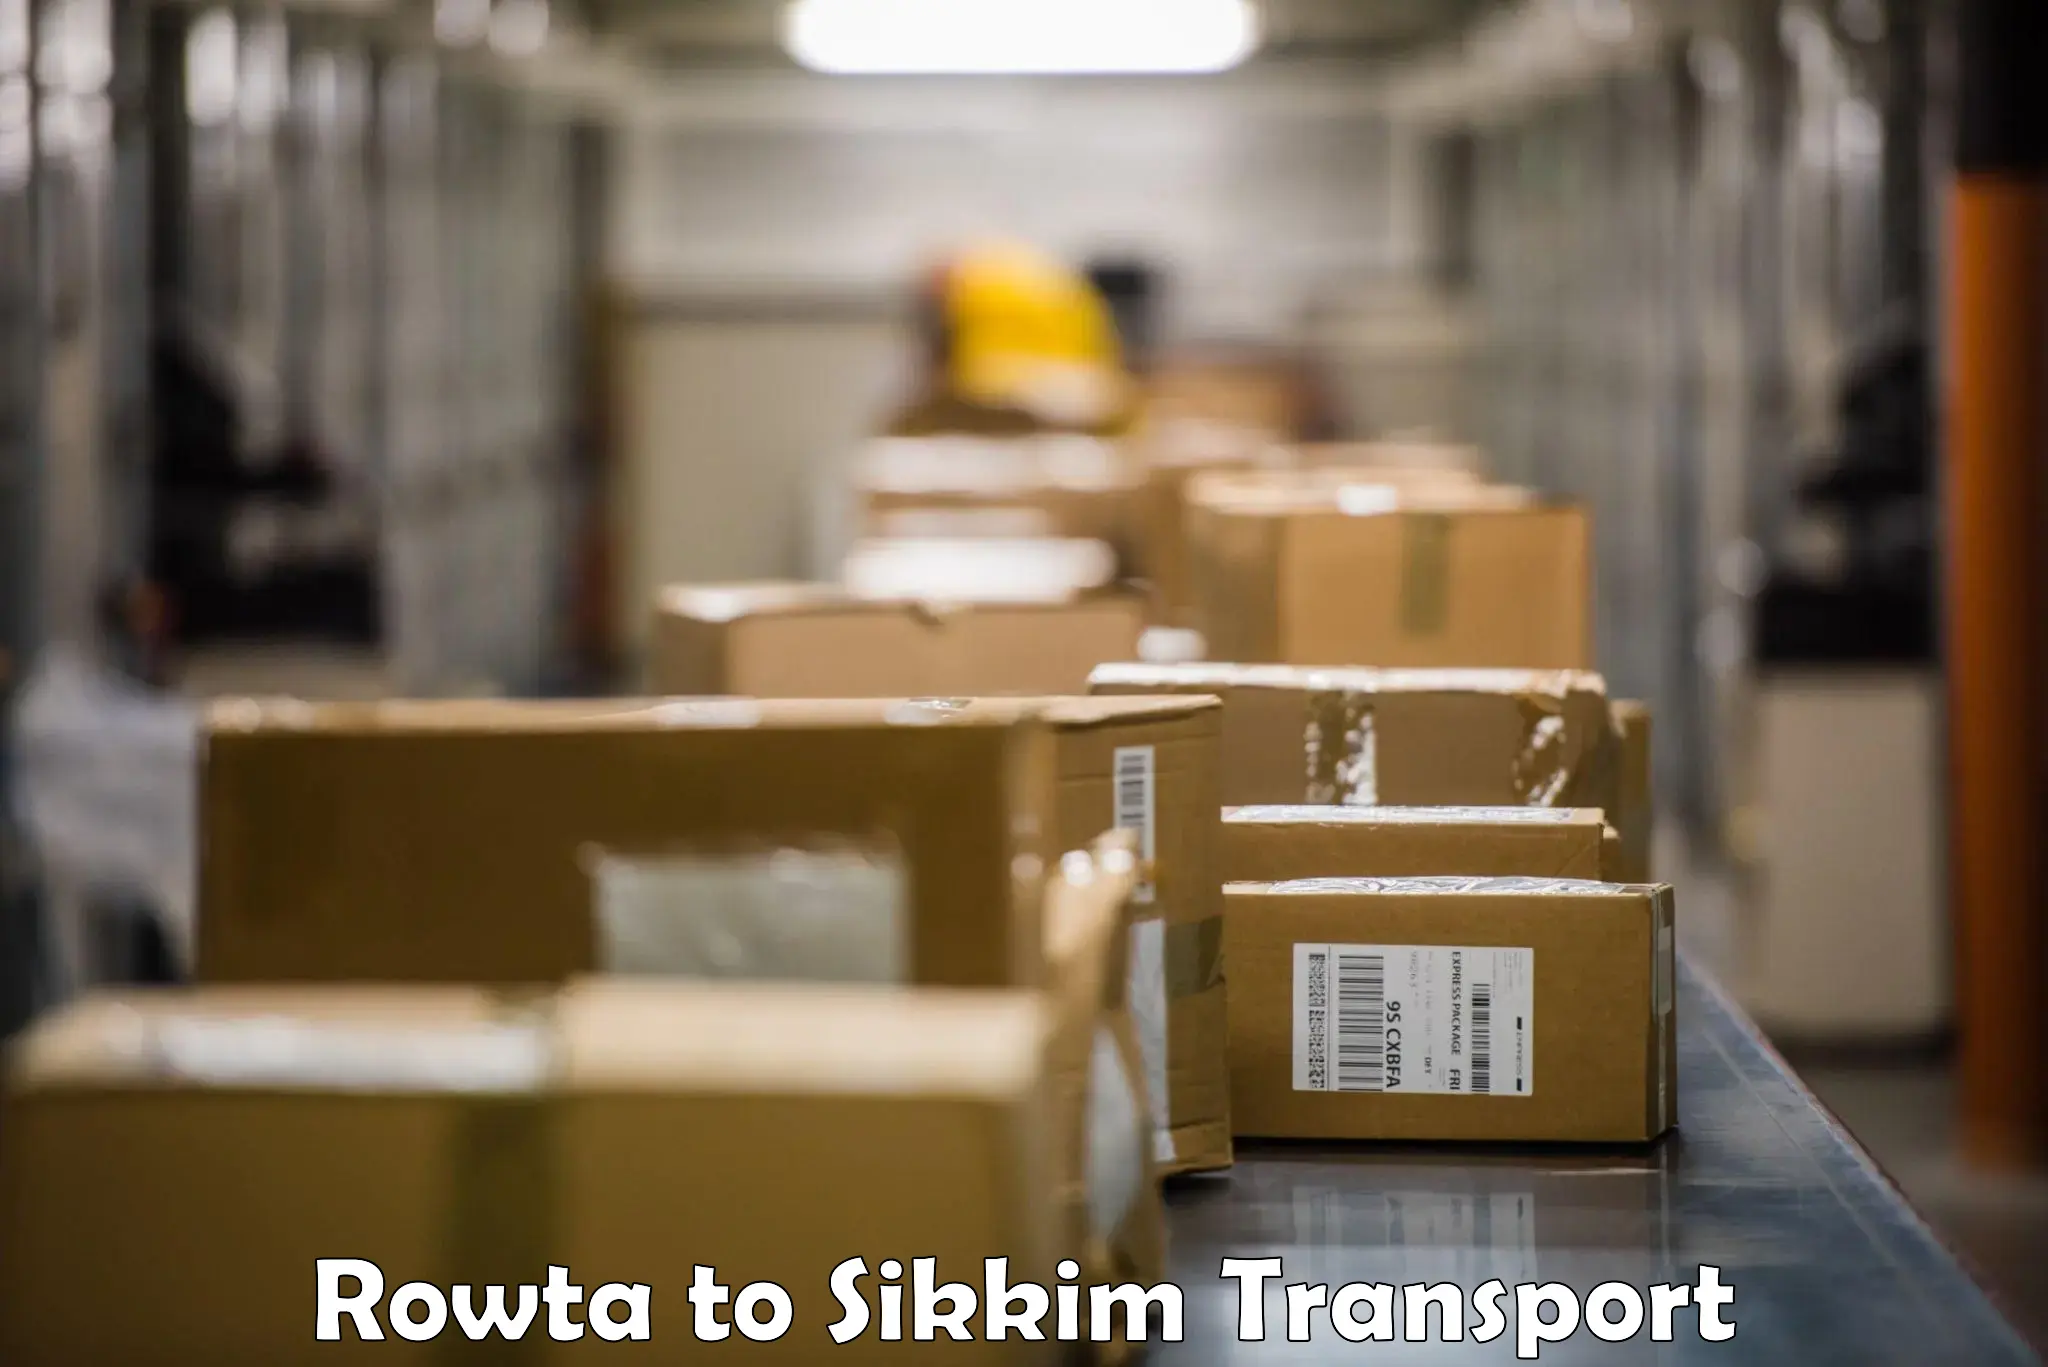 Online transport service Rowta to West Sikkim